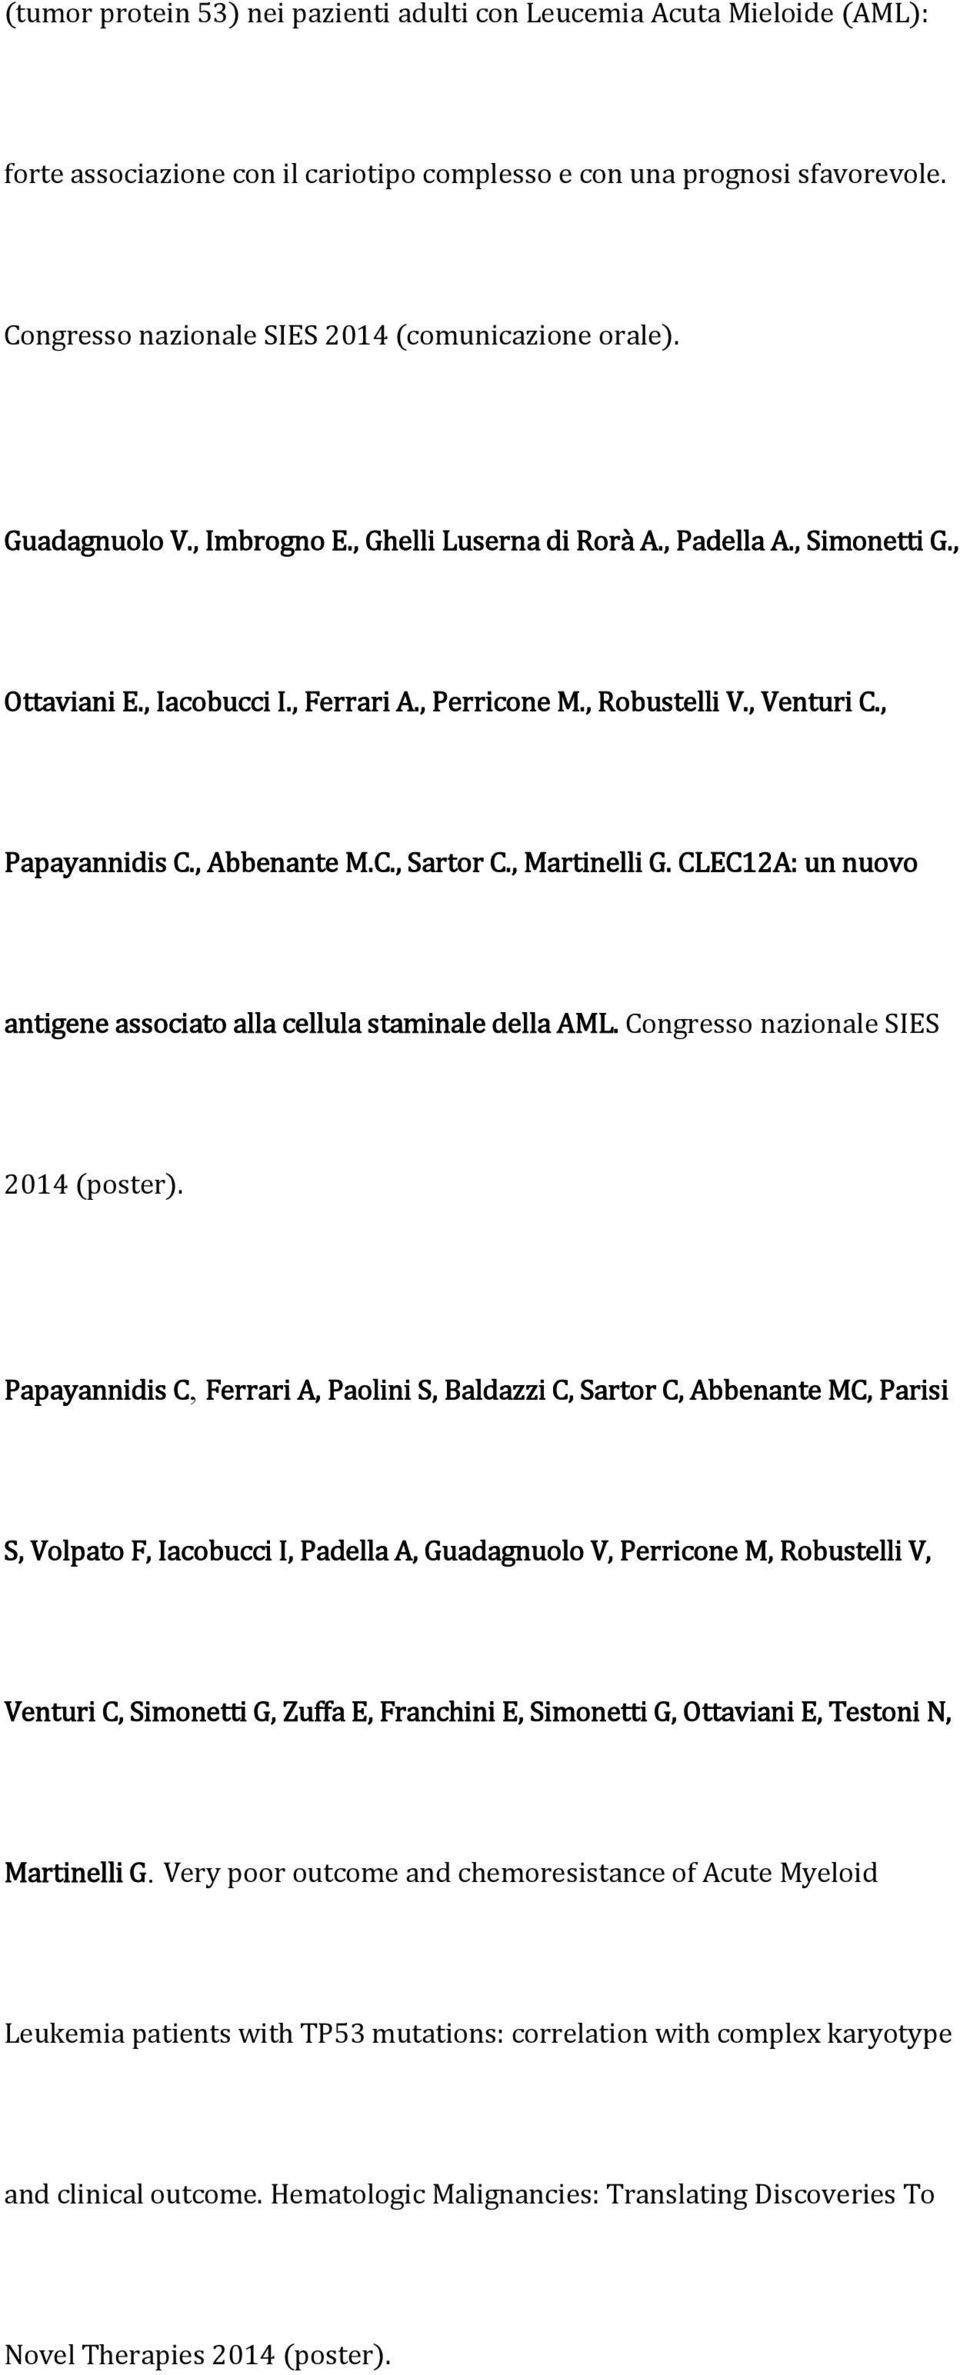 , Martinelli G. CLEC12A: un nuovo antigene associato alla cellula staminale della AML. Congresso nazionale SIES 2014 poster.